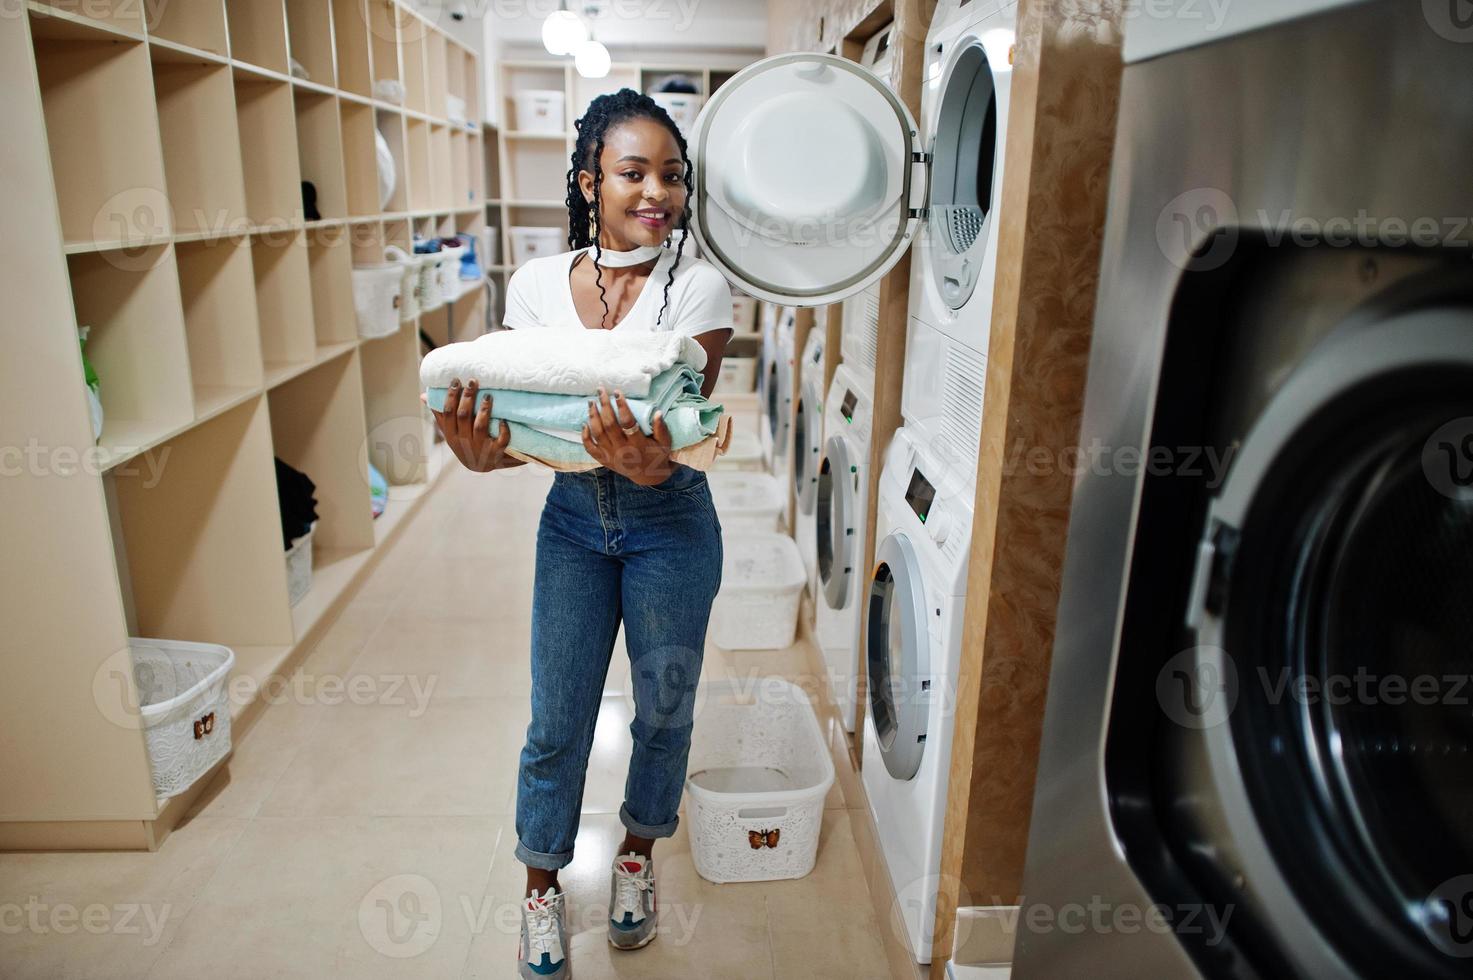 alegre mulher afro-americana com toalhas nas mãos perto da máquina de lavar roupa na lavanderia self-service. foto